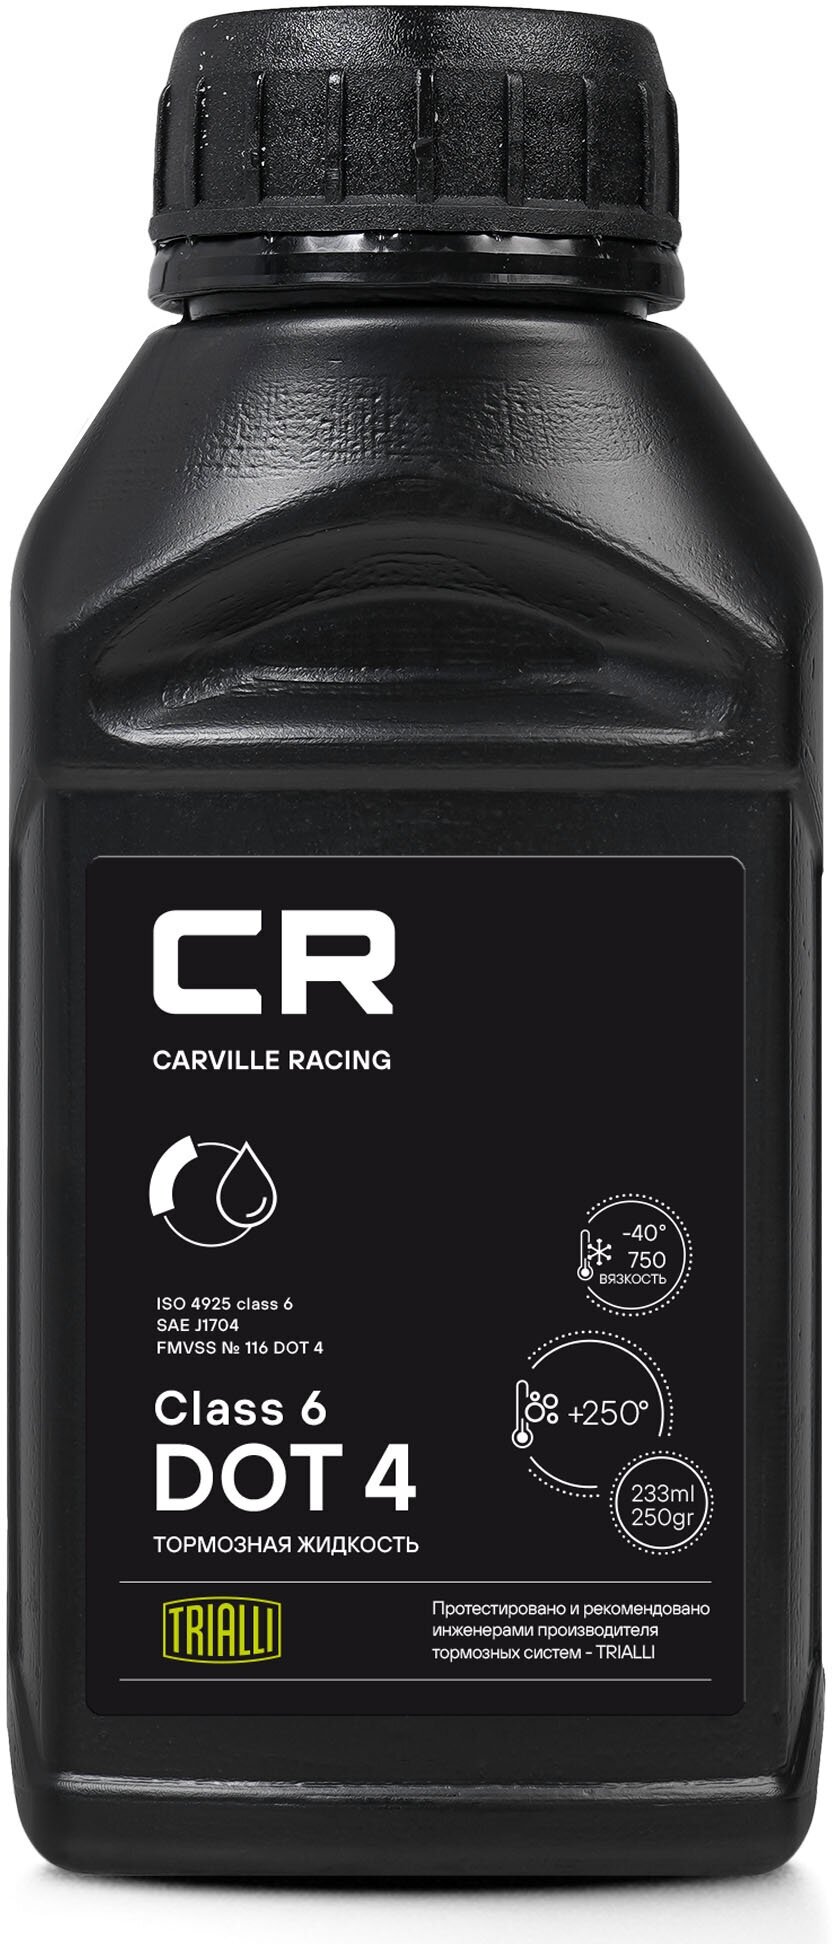 Жидкость тормозная Carville Racing DOT 4 синтетическая Class 6 вязкость <700 233 мл CARVILLE RACING L6275257 | цена за 1 шт